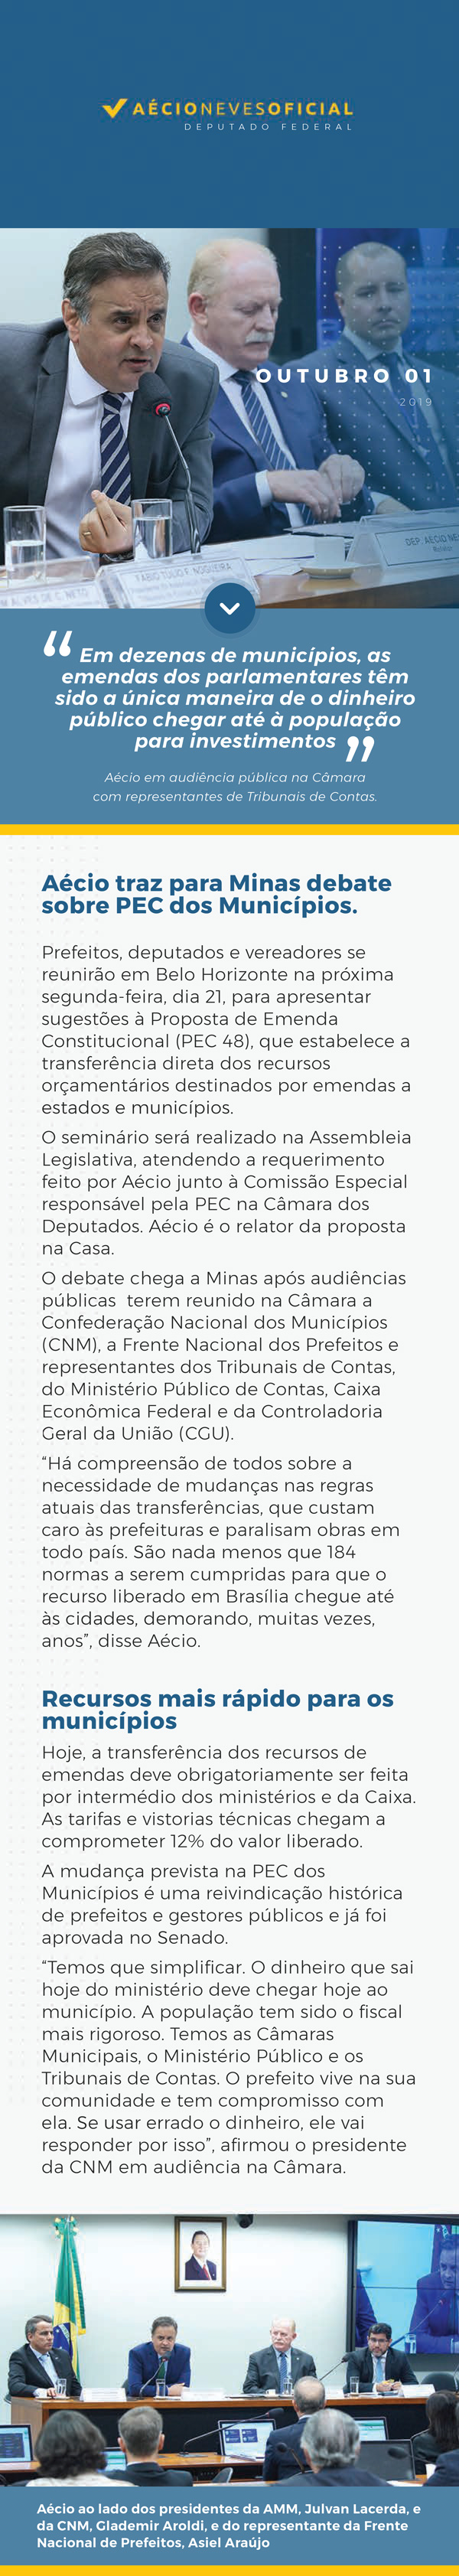 Aécio-traz-para-Minas-debate-sobre-PEC-dos-Municípios